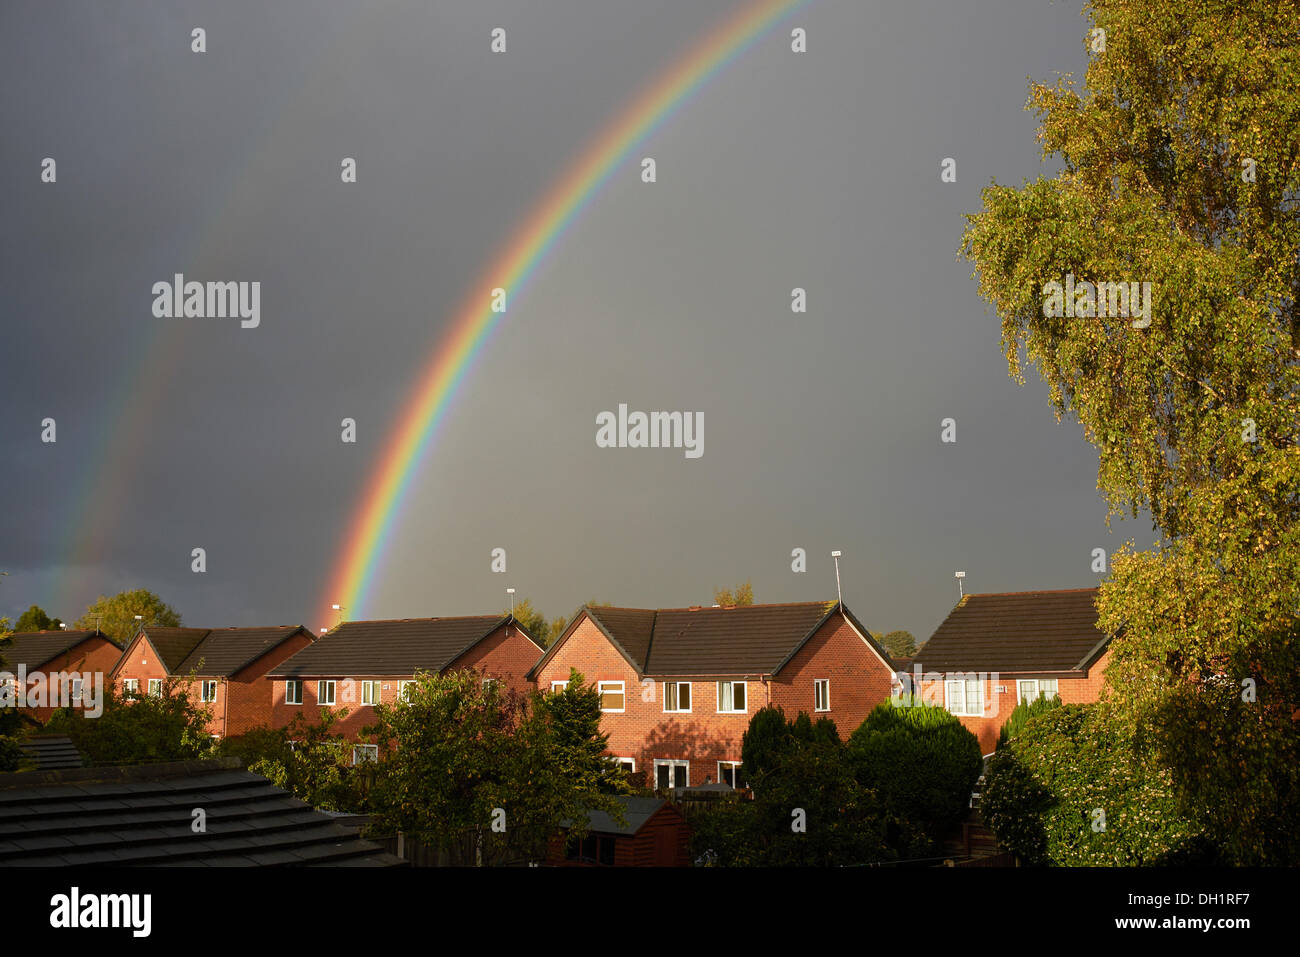 Chester, Regno Unito. Il 29 ottobre 2013. Regno Unito meteo. Nuvole scure e sharp docce con sole producono un arcobaleno sui tetti. Credito: Andrew Paterson/Alamy Live News Foto Stock